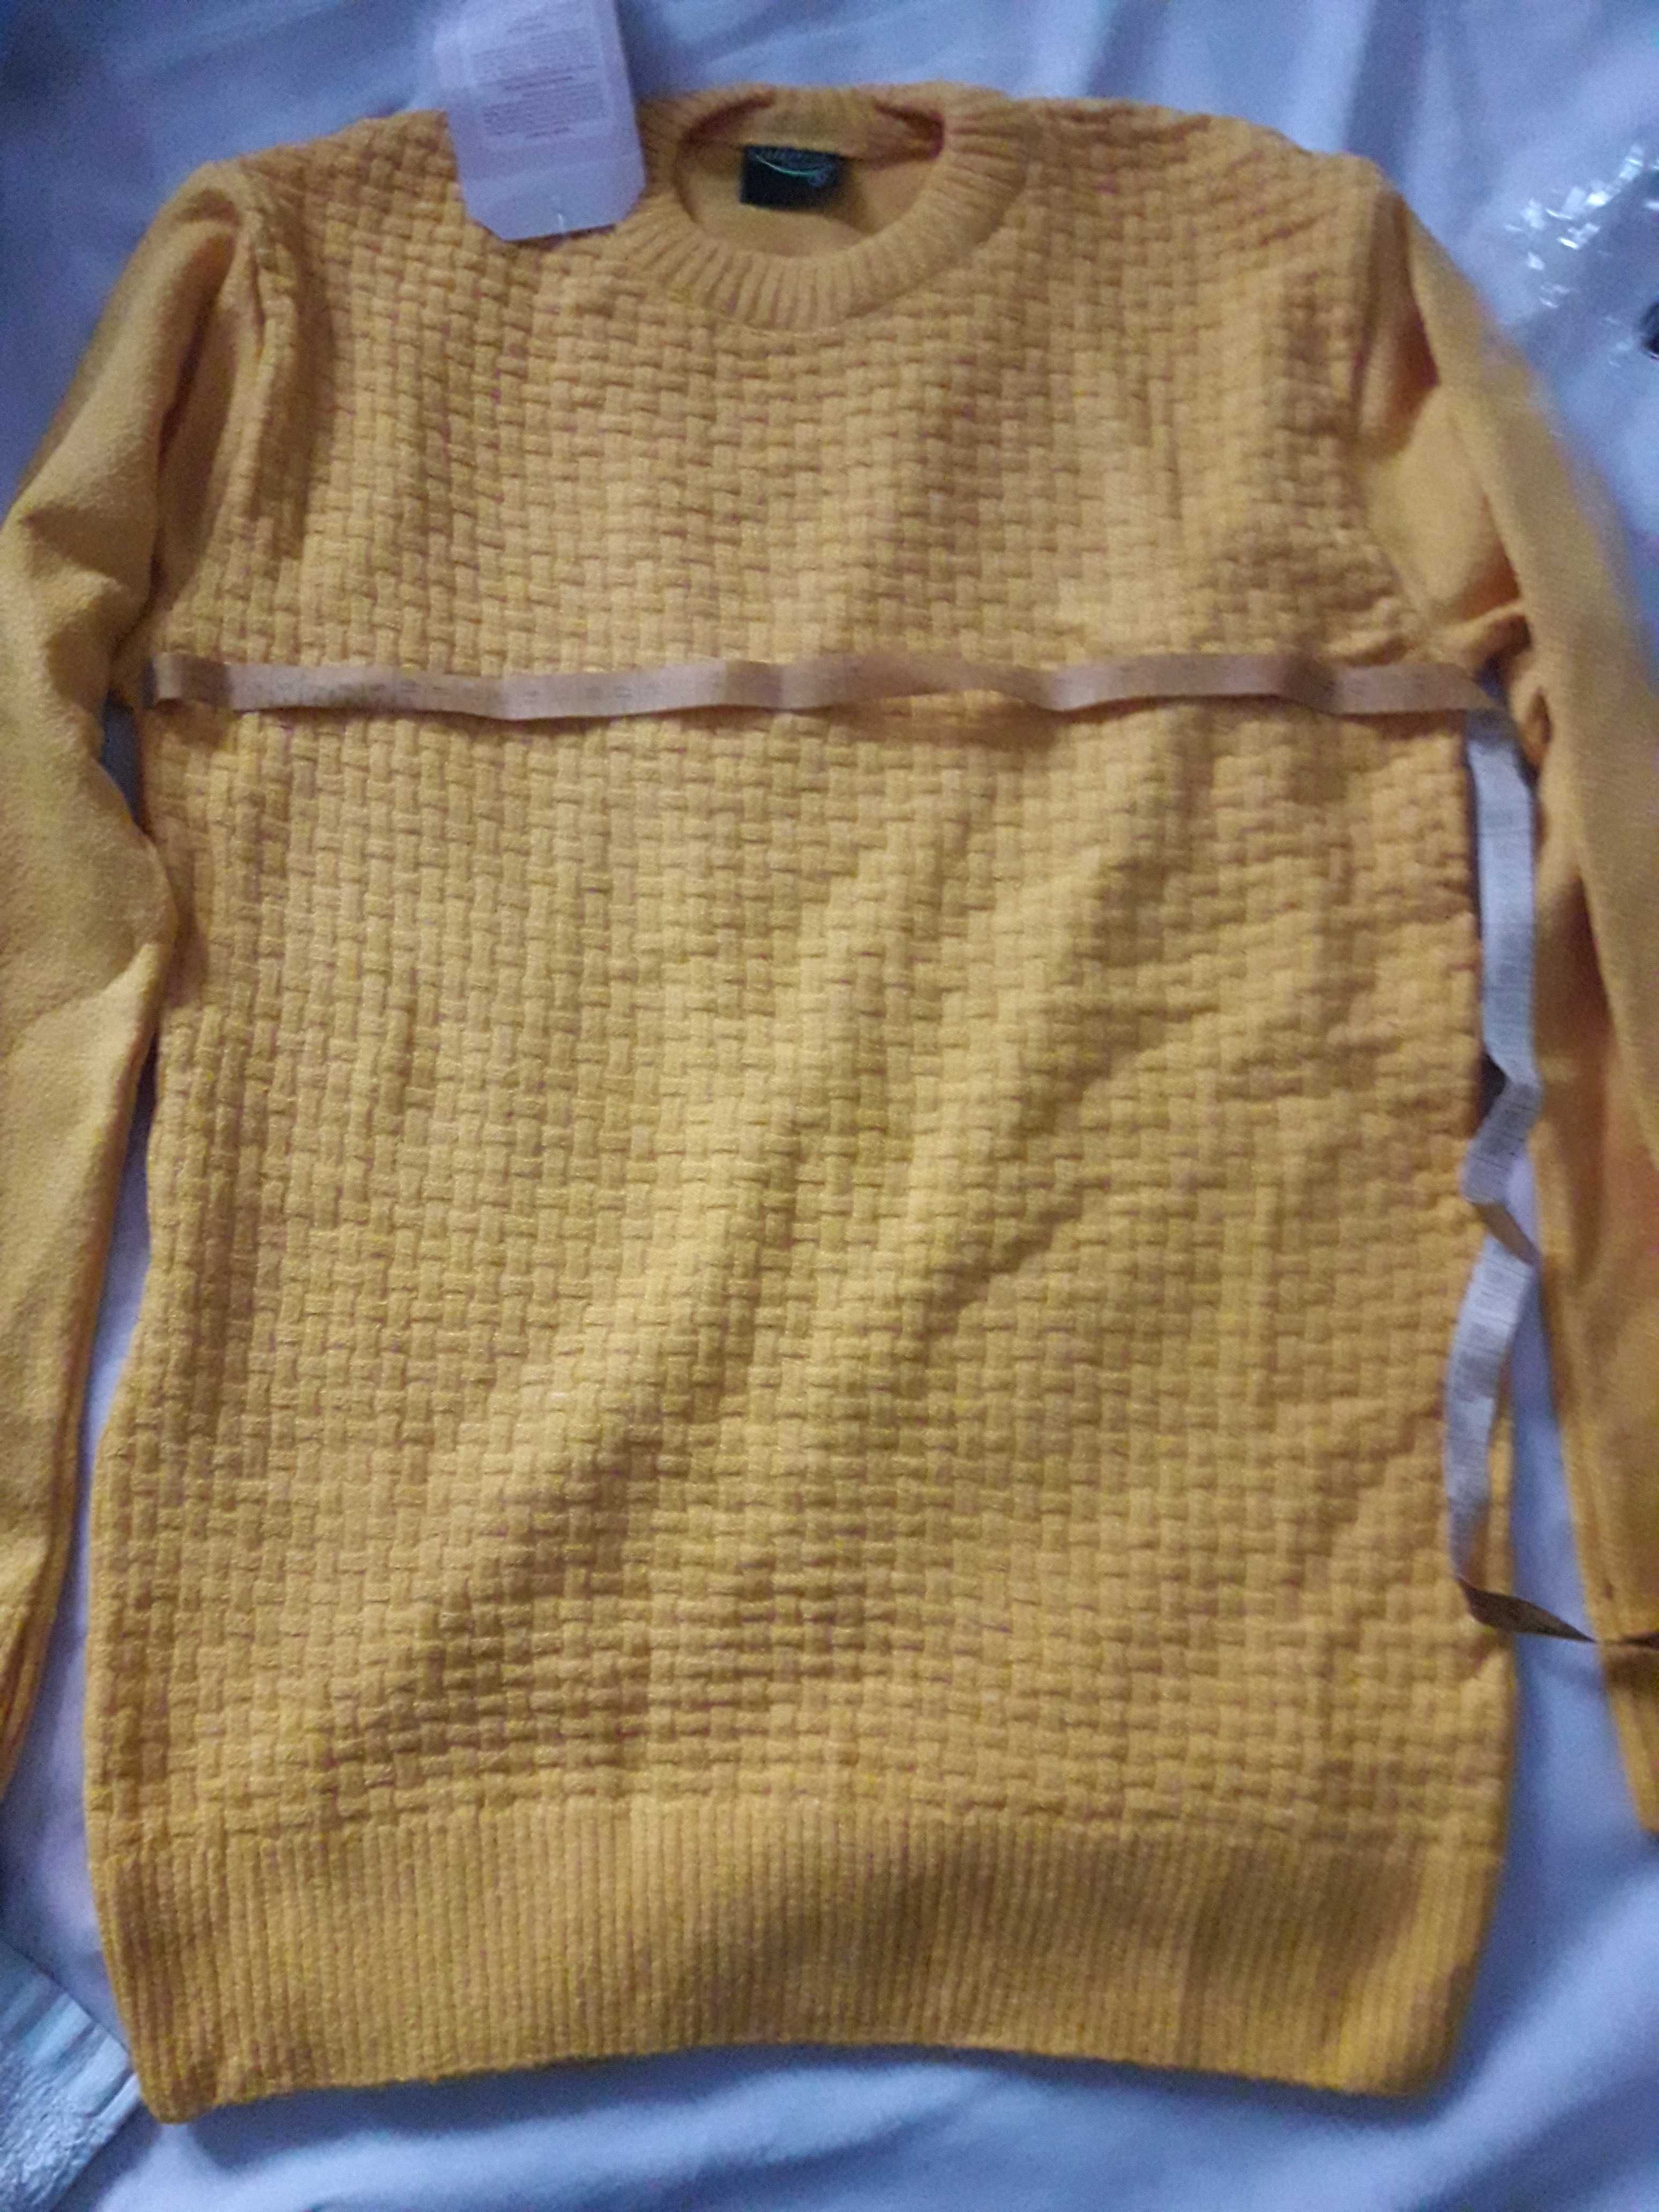 Новый желтый свитер s размер, фото цвет искажает